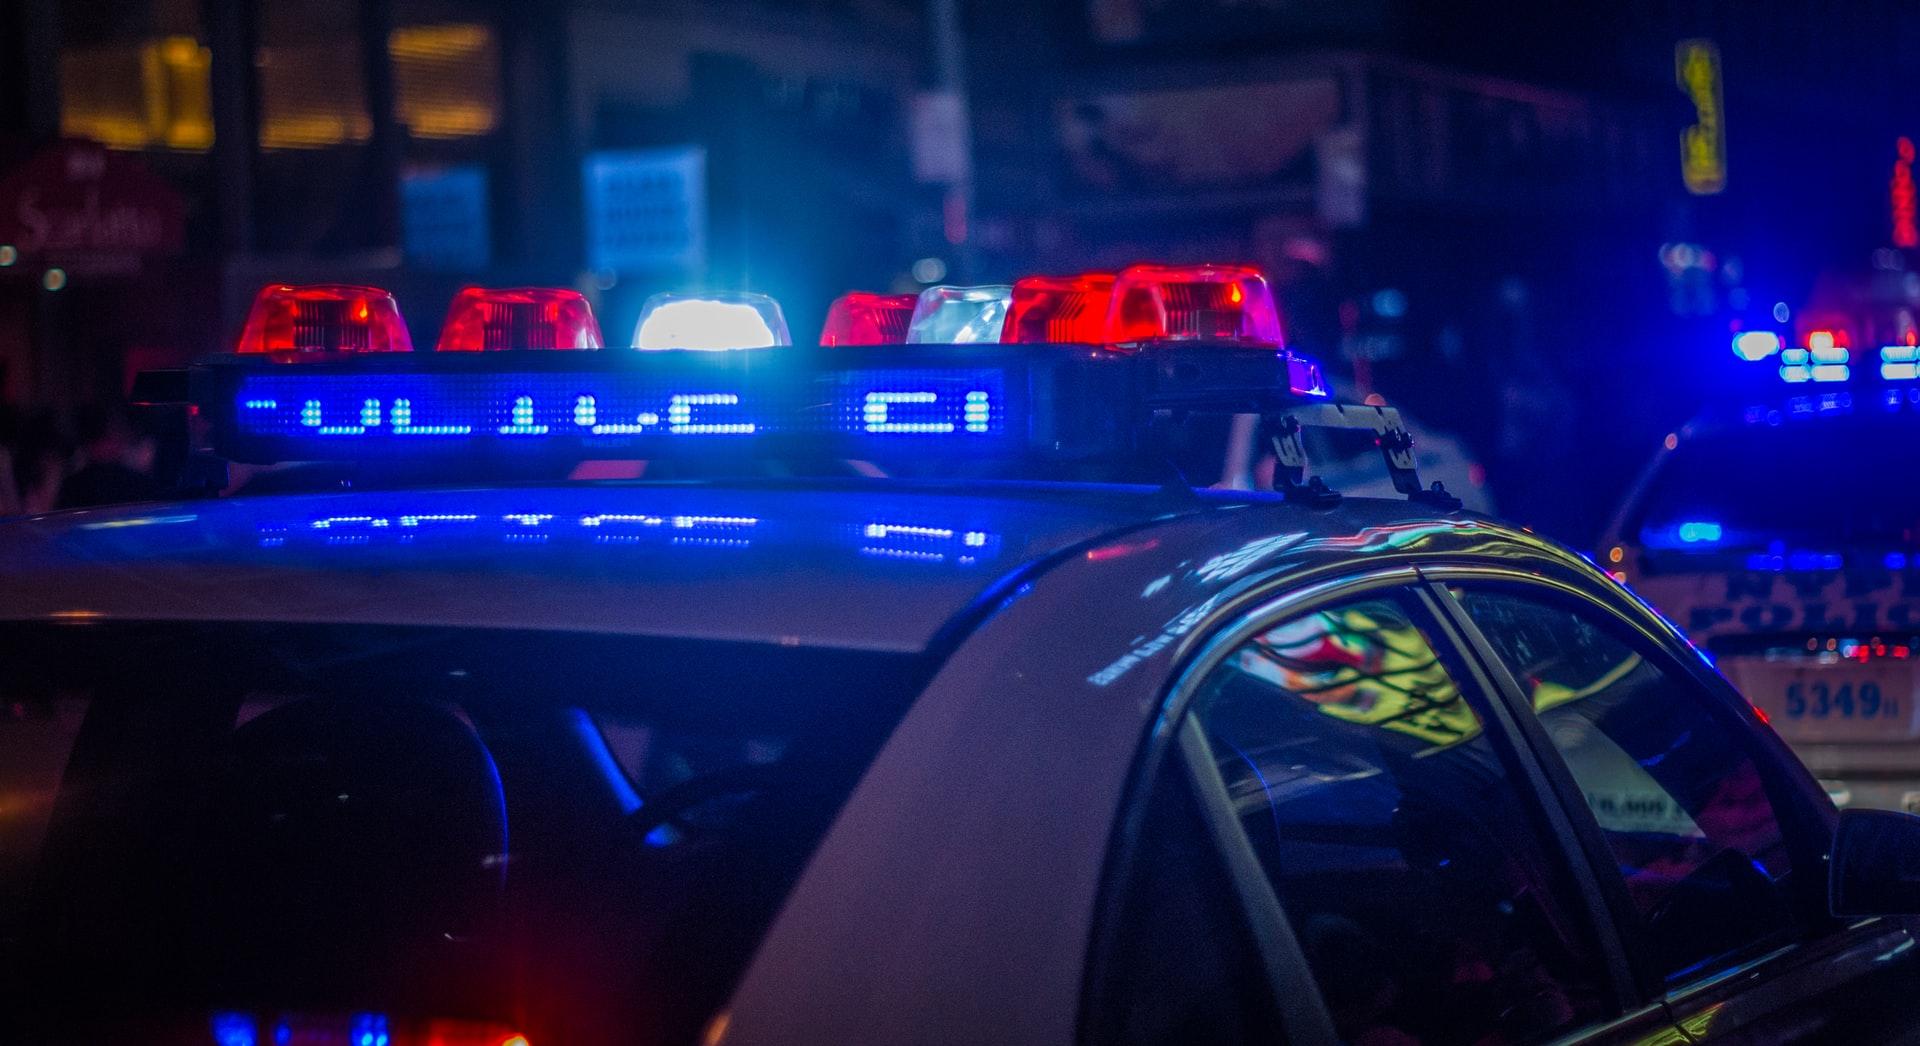 Dubai has some crazy fast police cars.